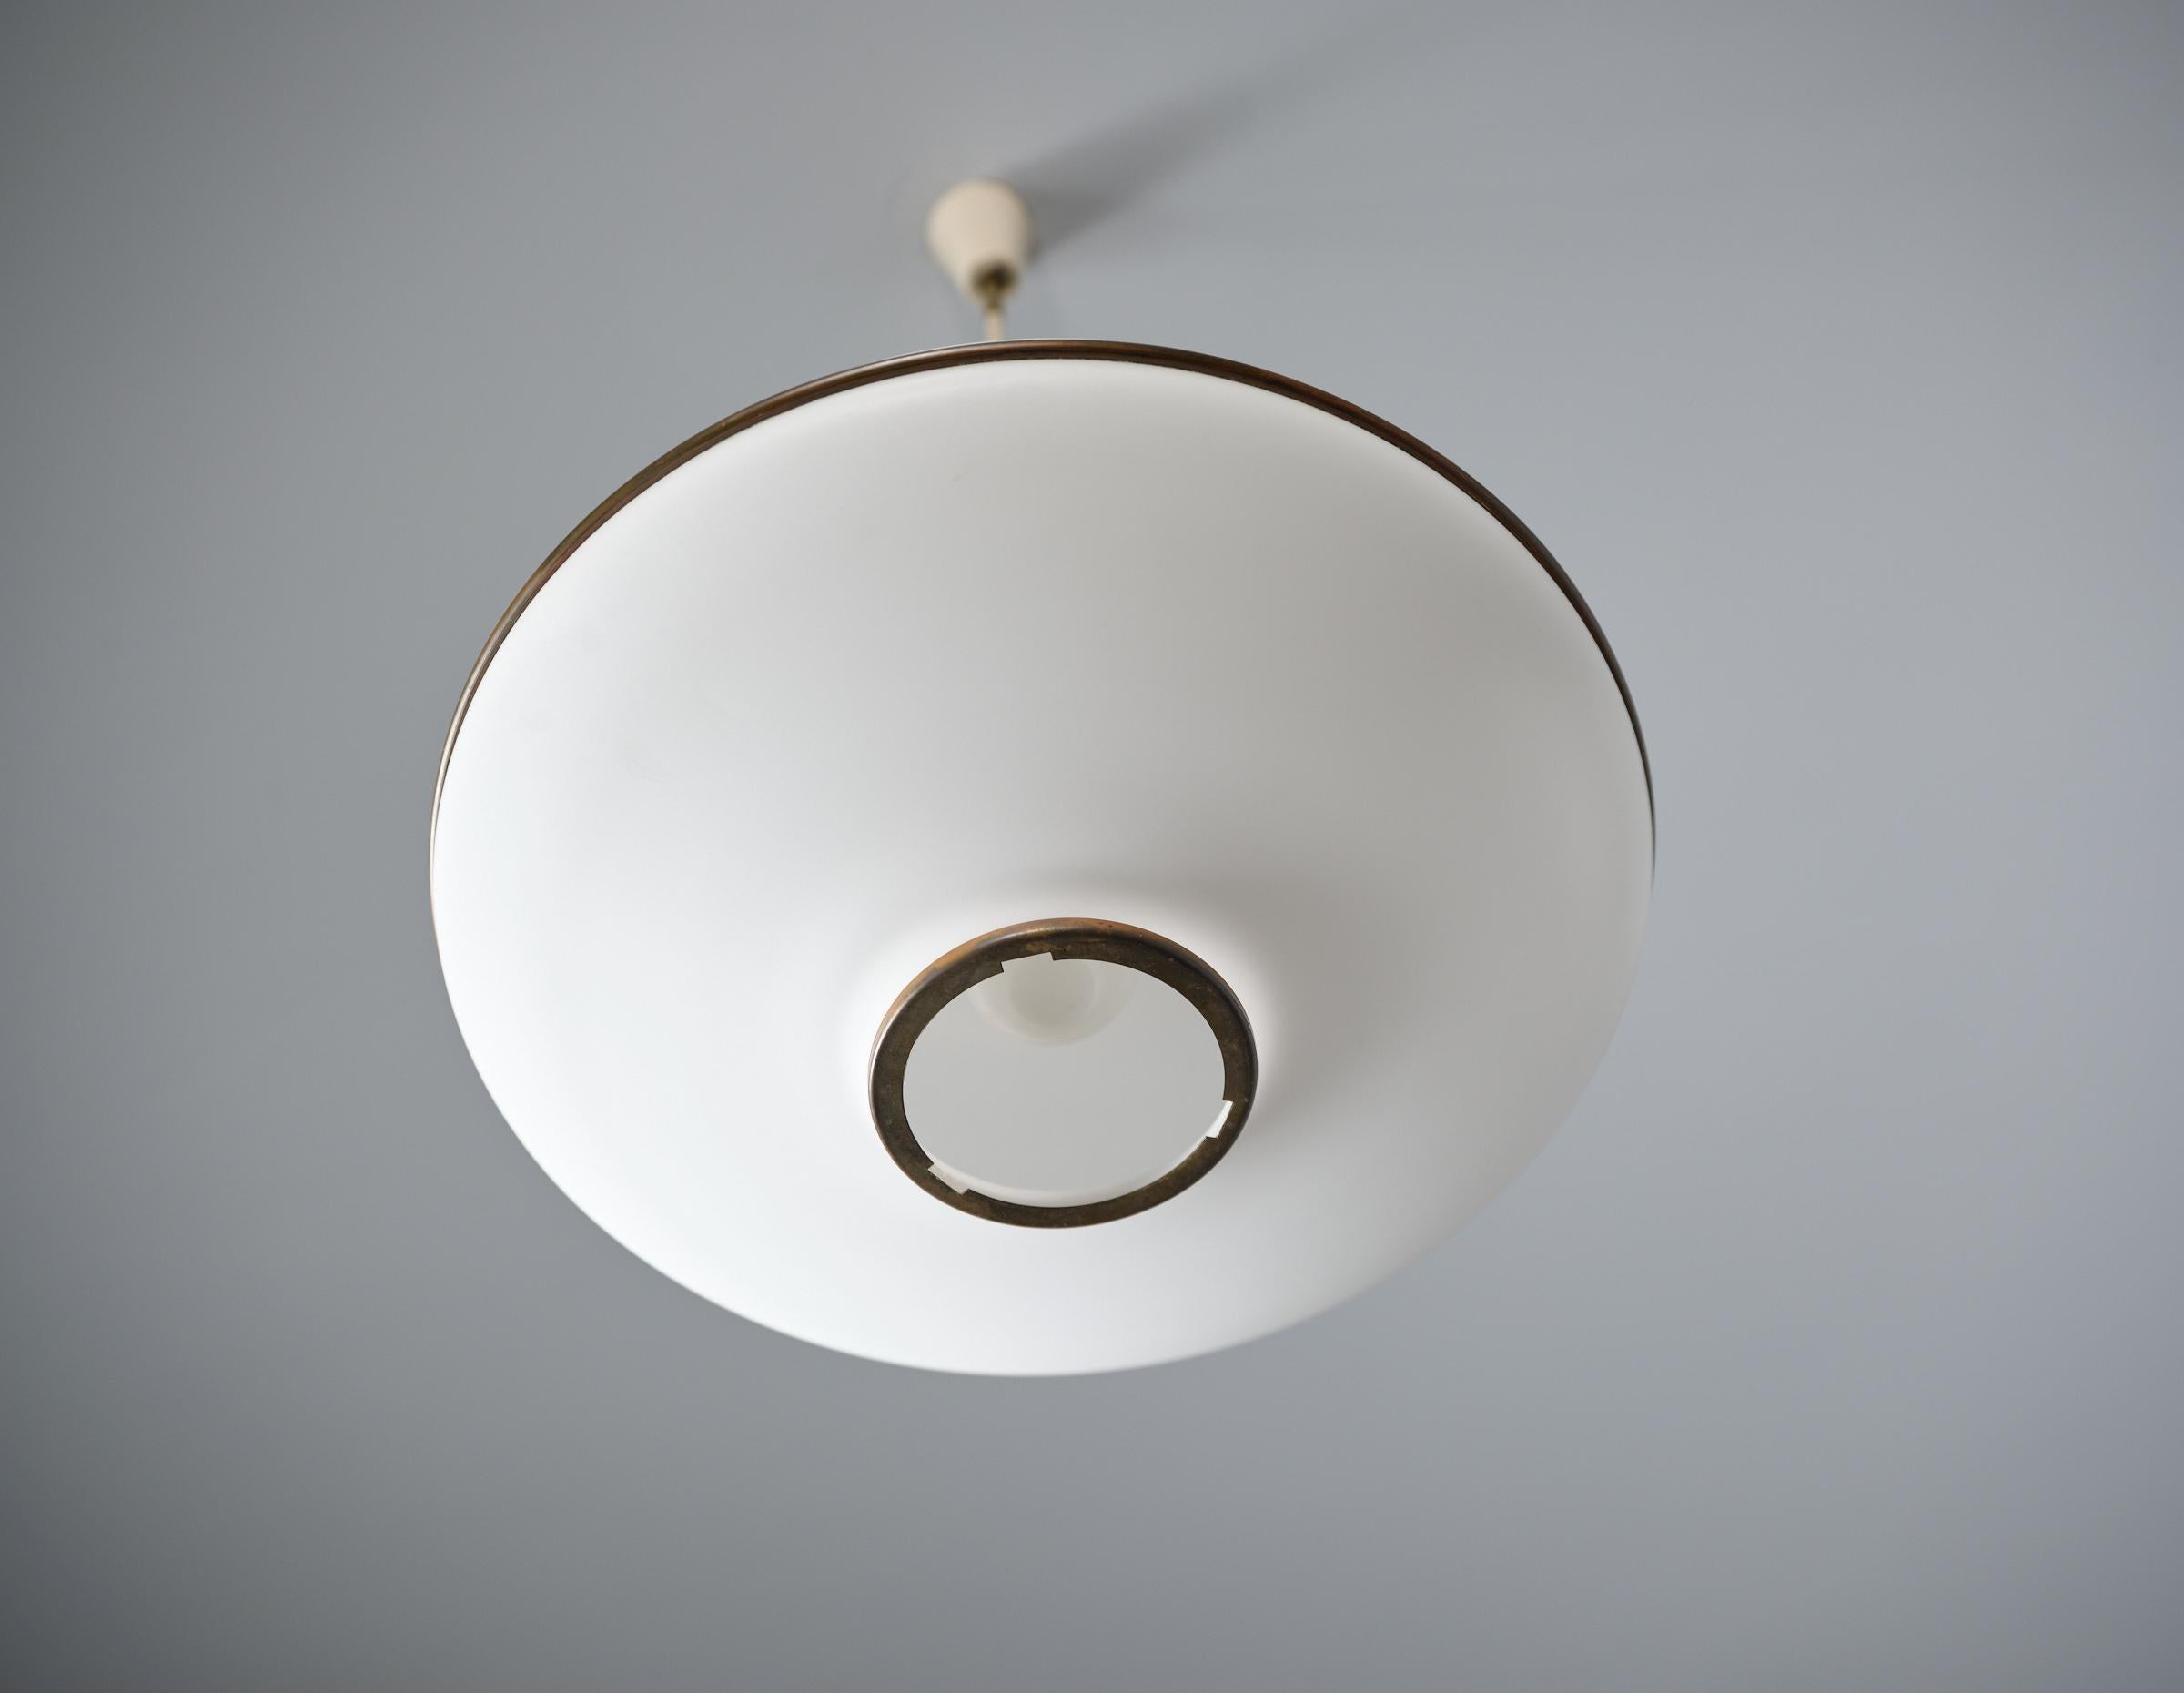 Italian Flying Saucer Pendant Lamp - Vintage 1950s Modernist Ceiling Light For Sale 2